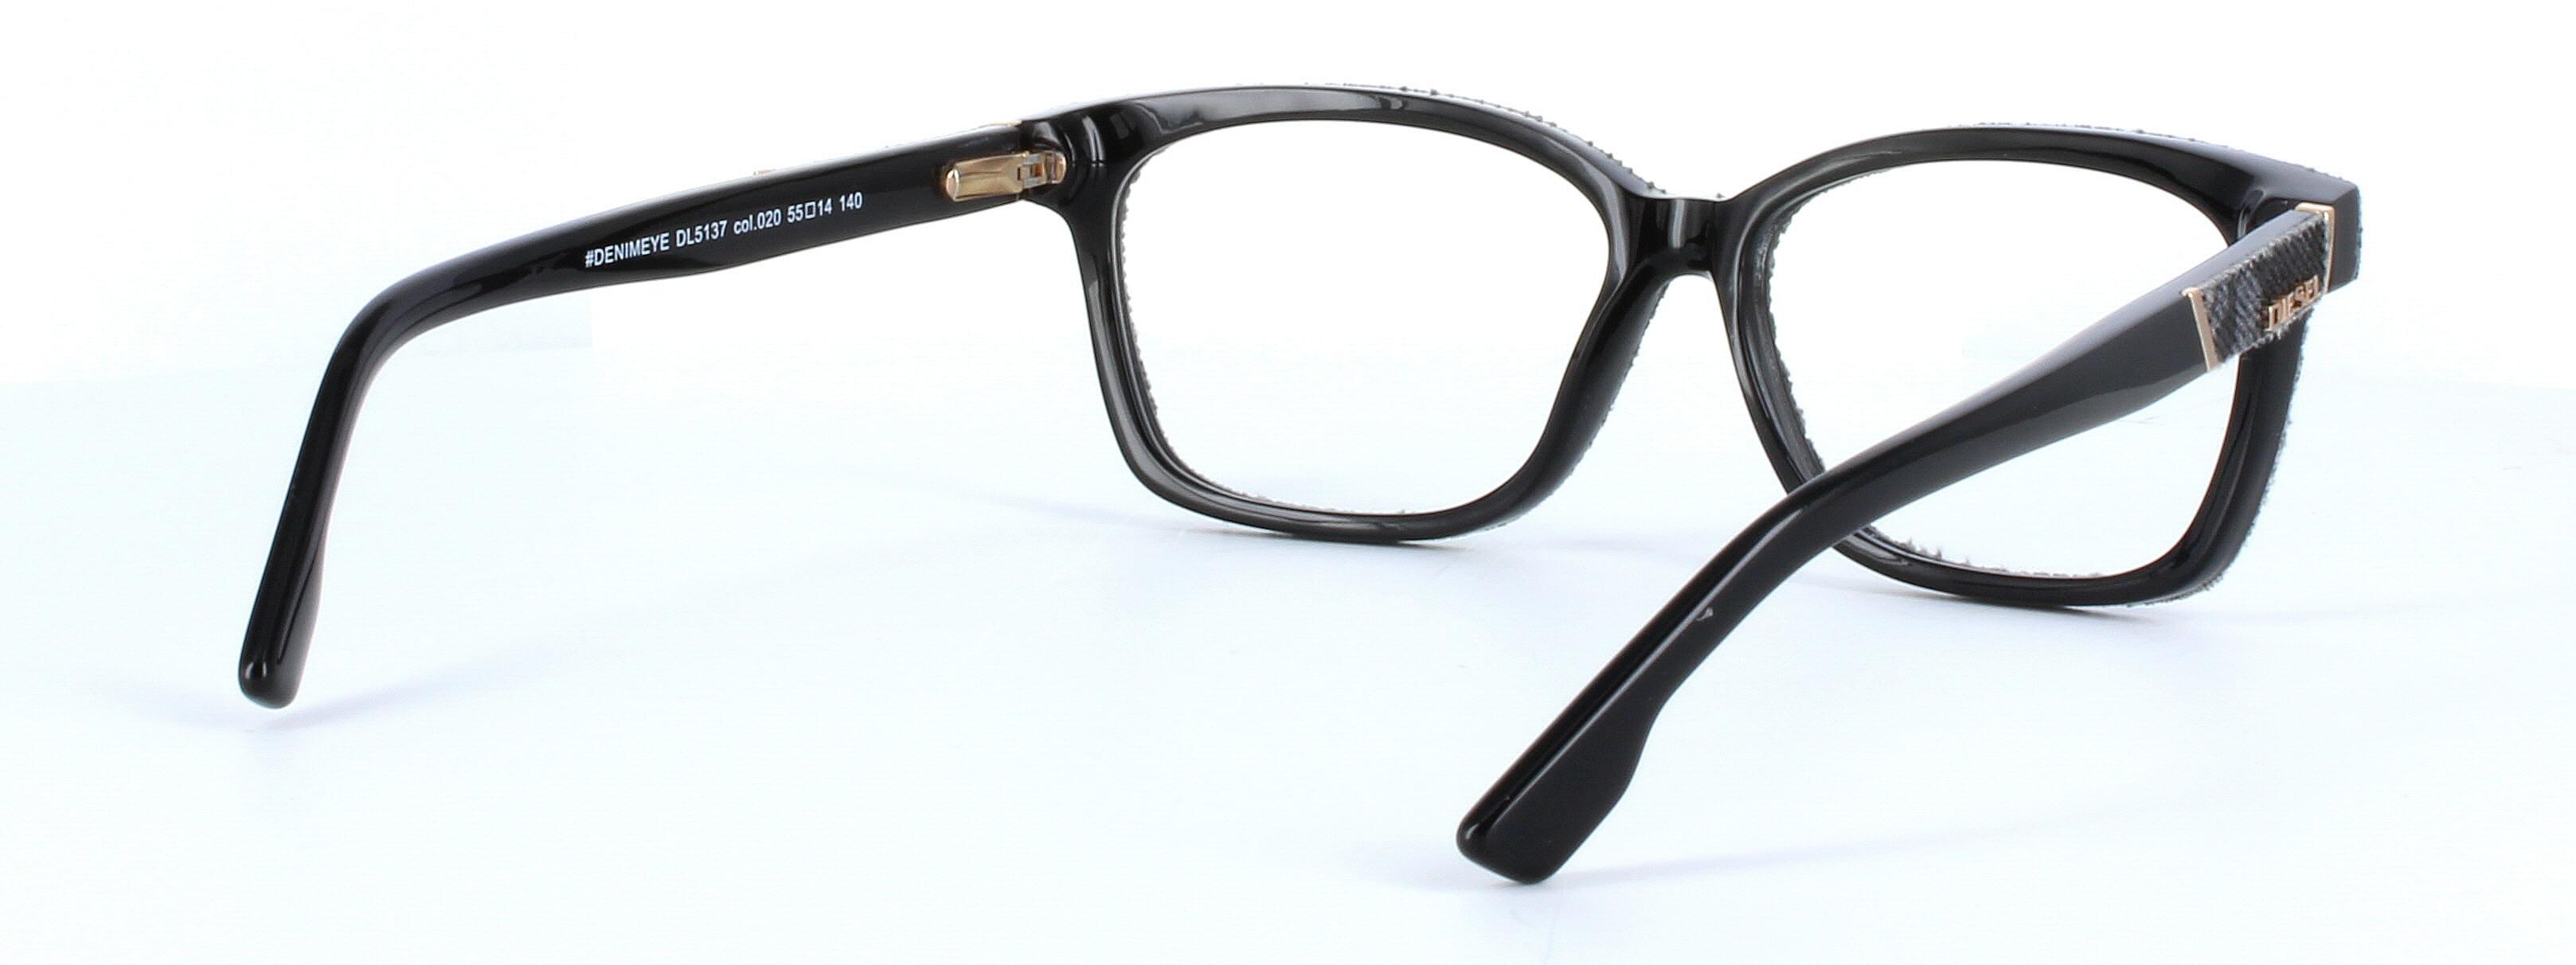 Diesel denimeye 5137 - ladies designer glasses in black/grey denim on acetate - image view 4